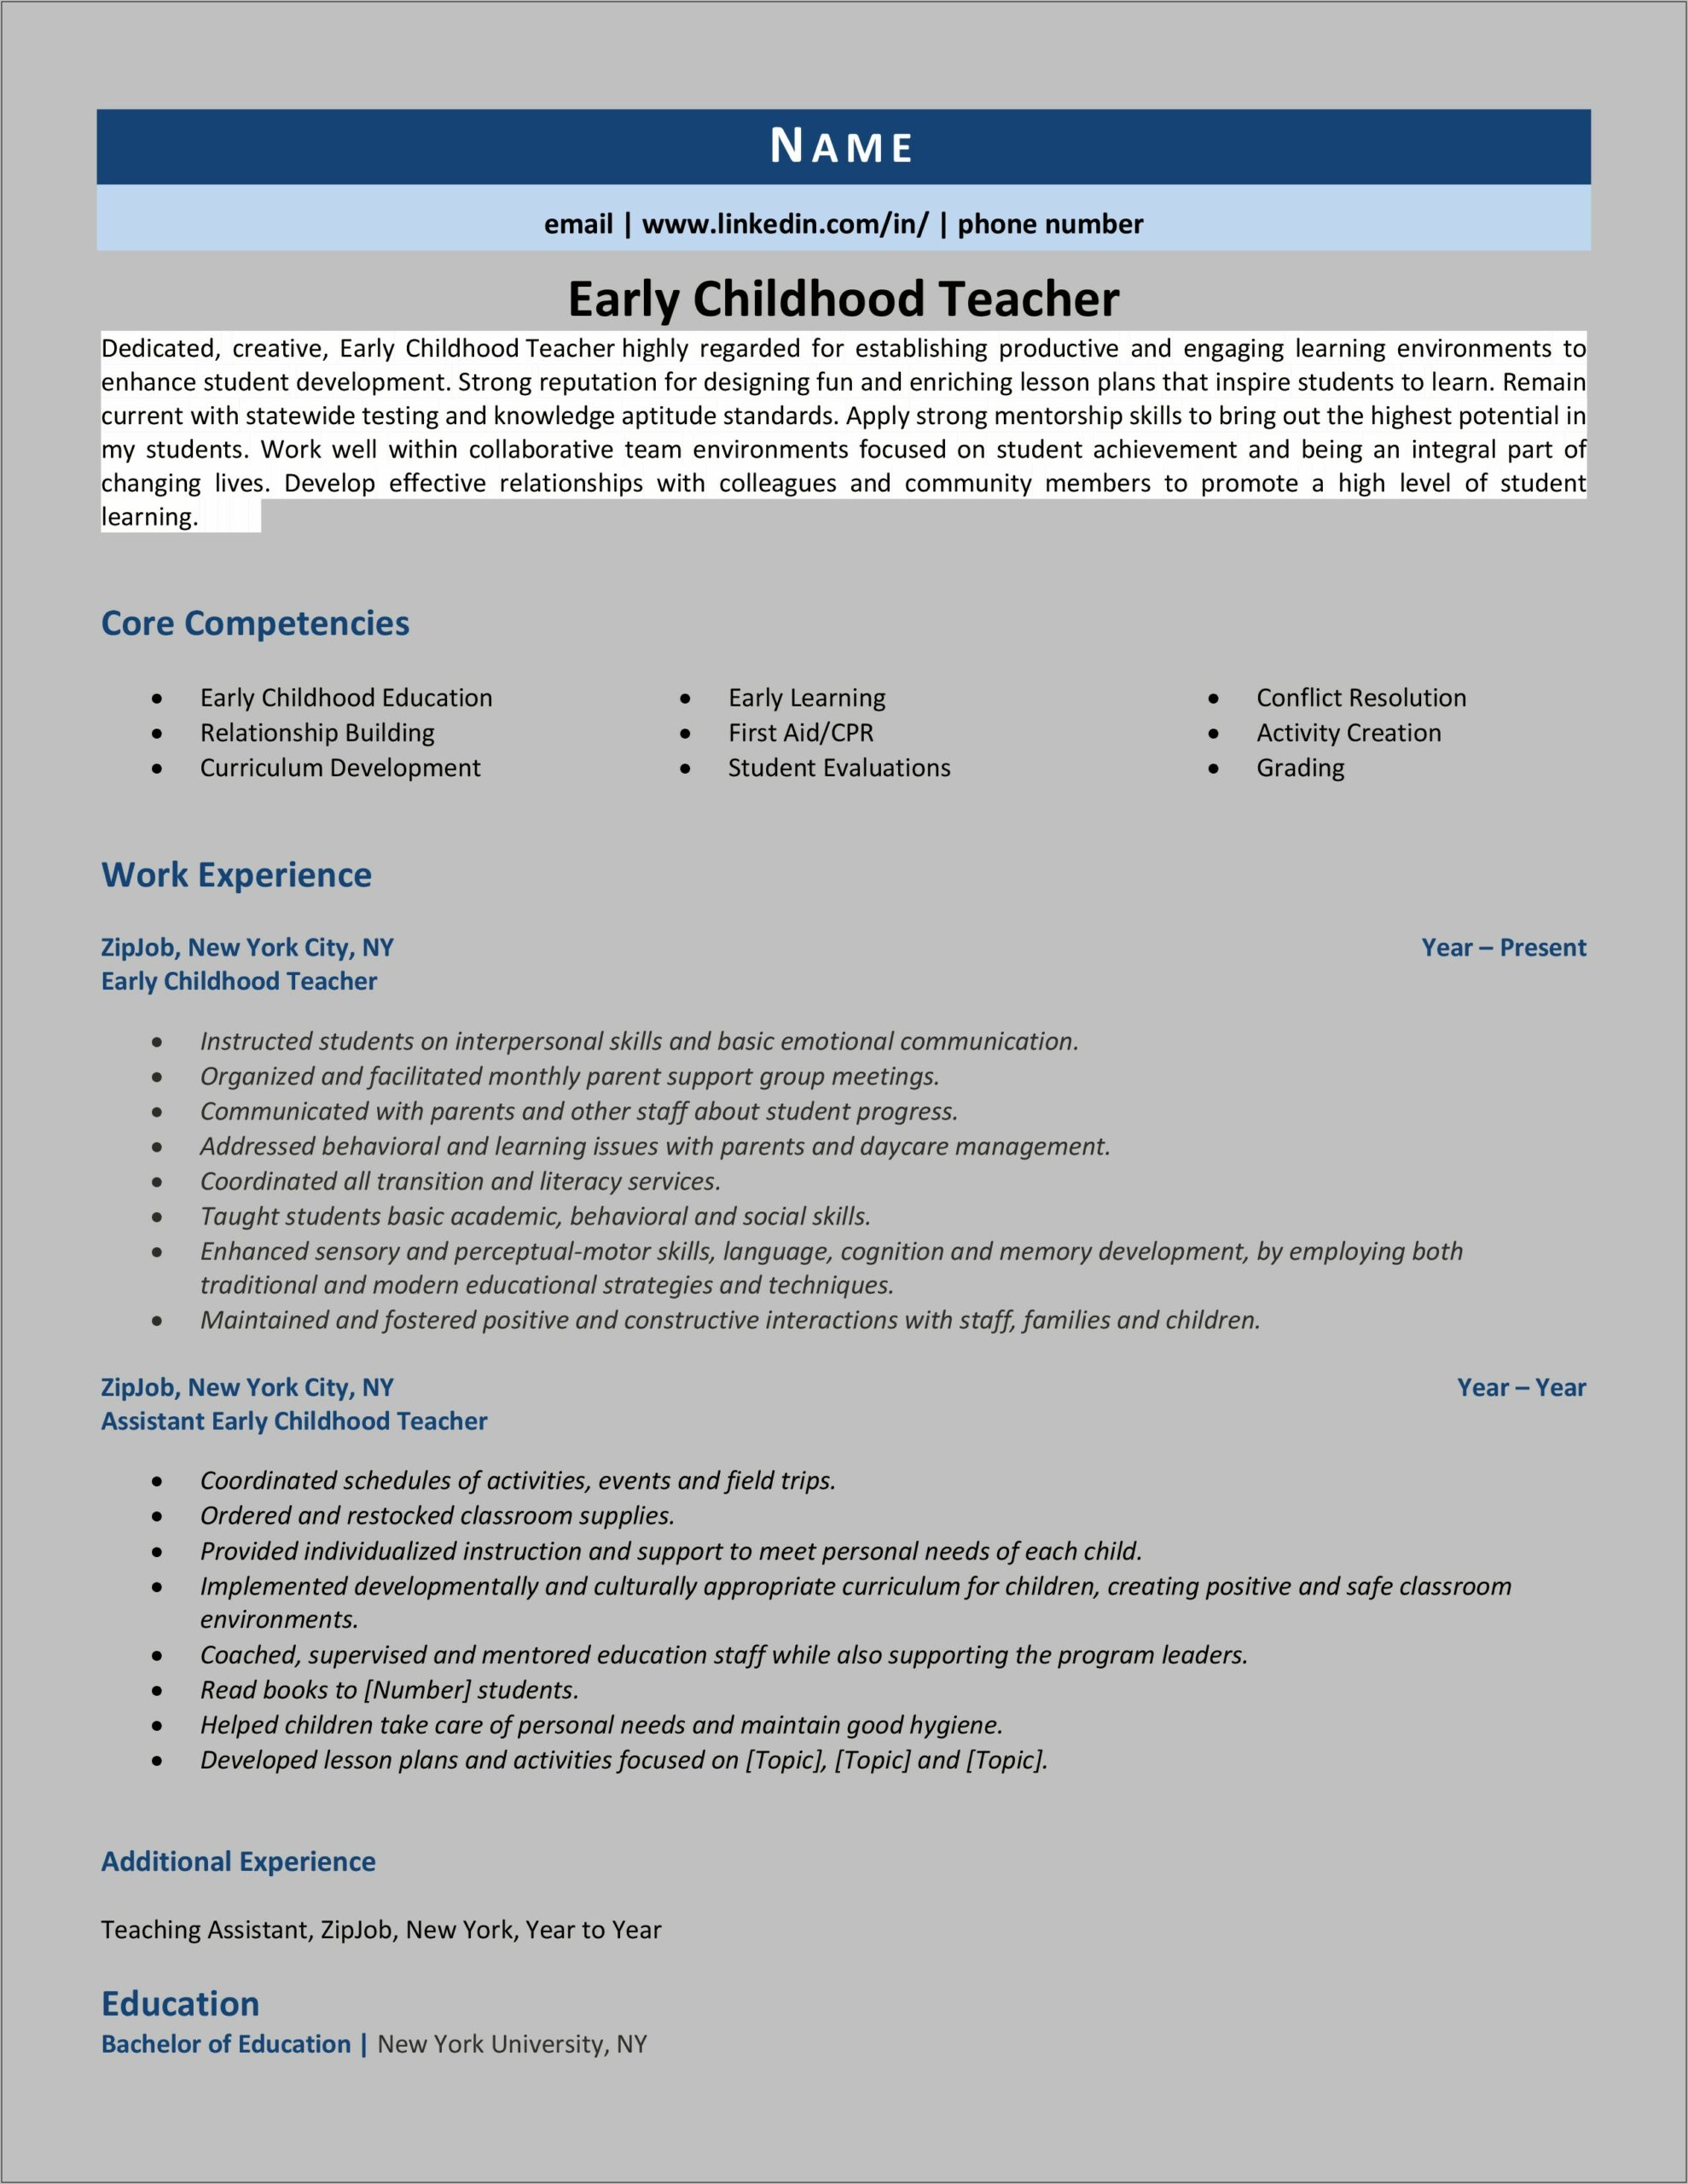 Skills For Elementary School Teacher Resume